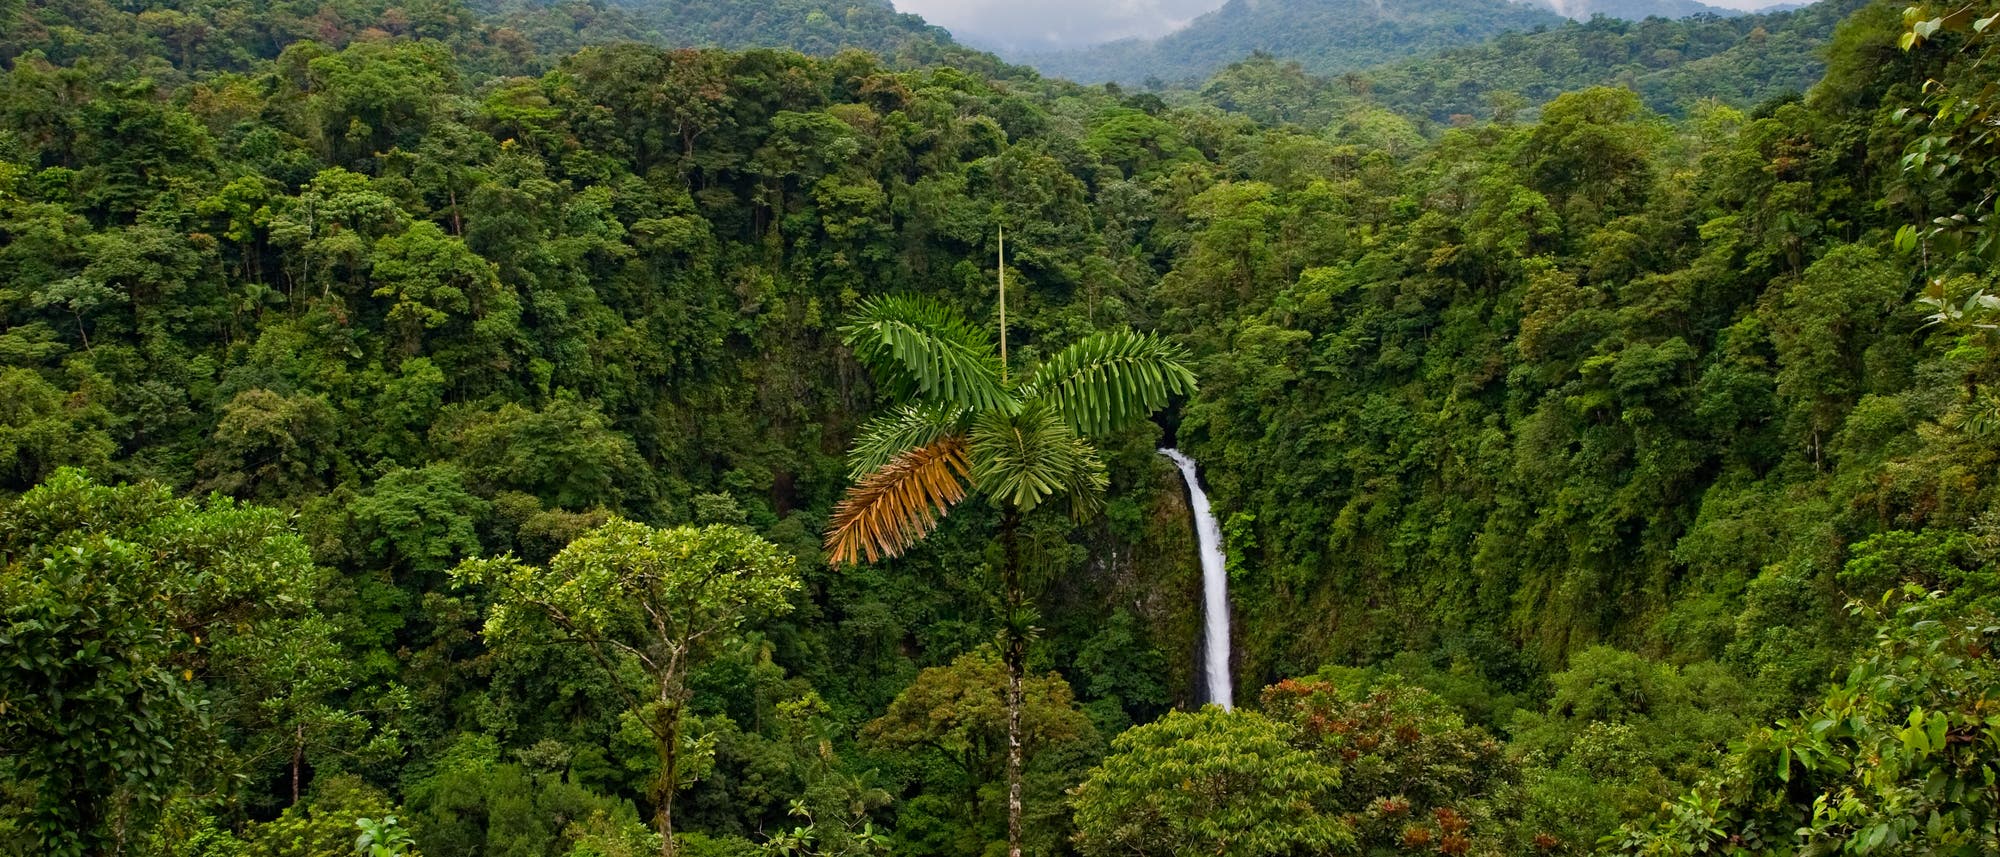 Regenwald in Costa Rica&nbsp;- eine grüne Vorzeigenation?